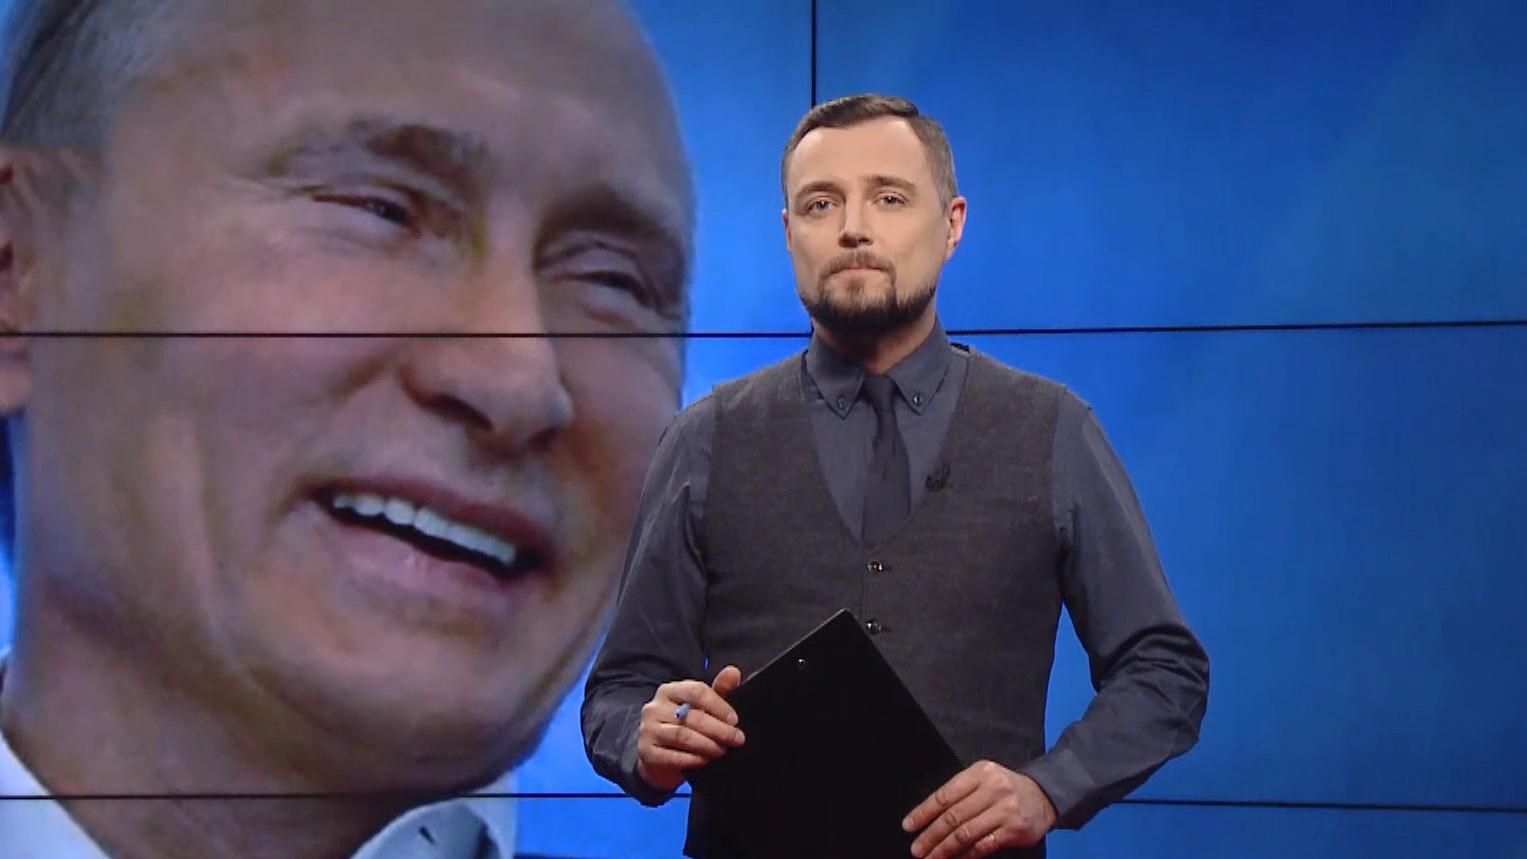 Pro новини: Дивіденти від закриття каналів Медведчука. Навальний "досміявся" 